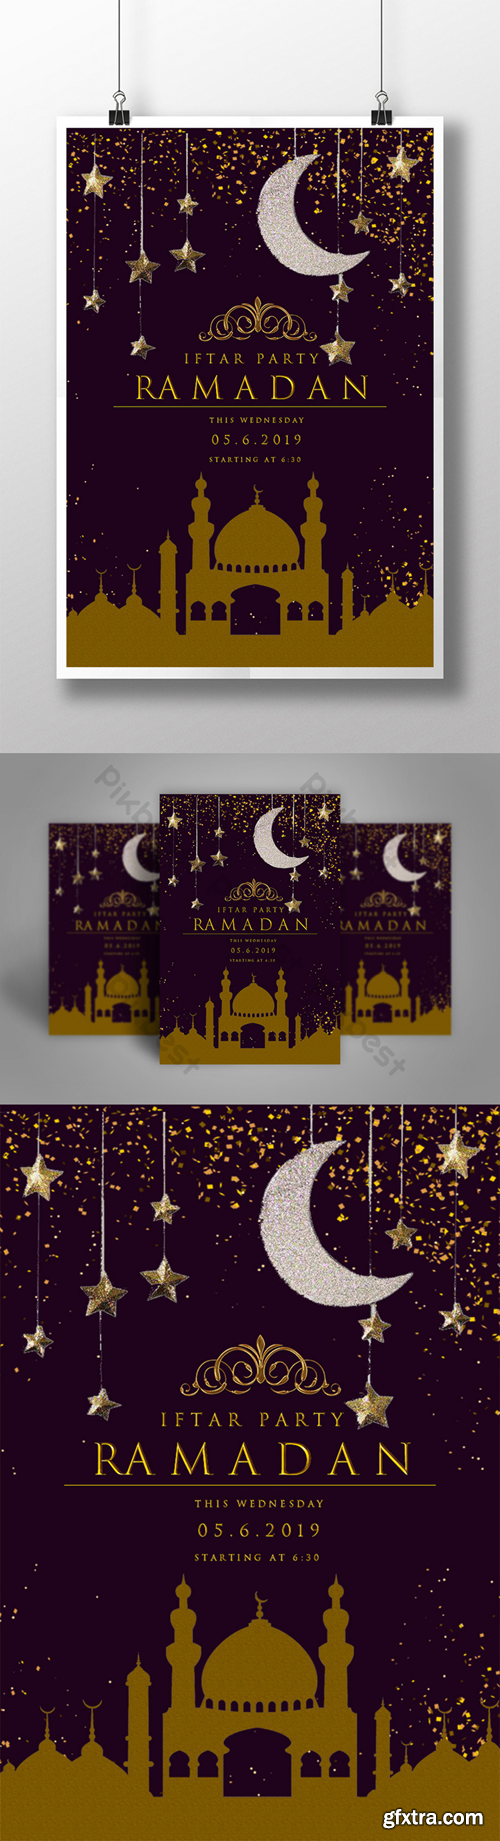 Ramadan iftar party poster Template PSD